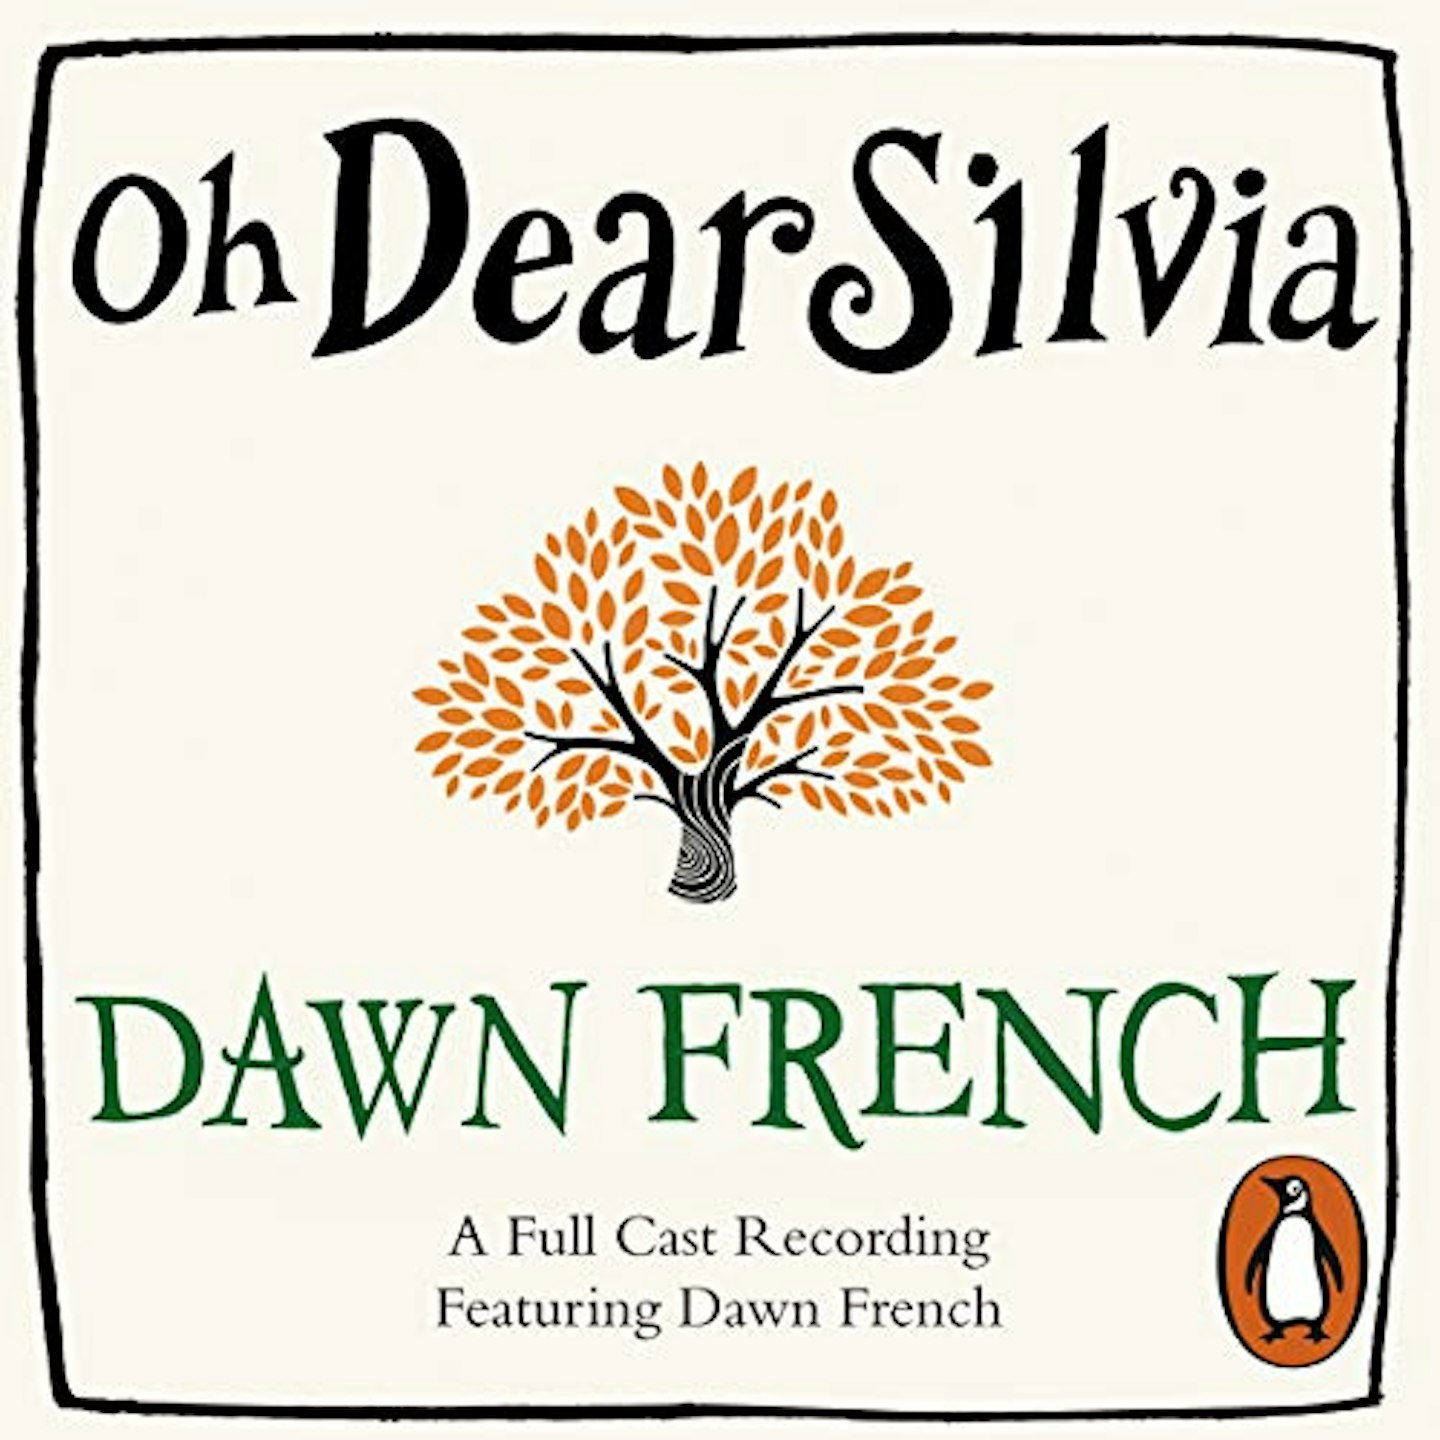 Oh Dear Silvia by Dawn French